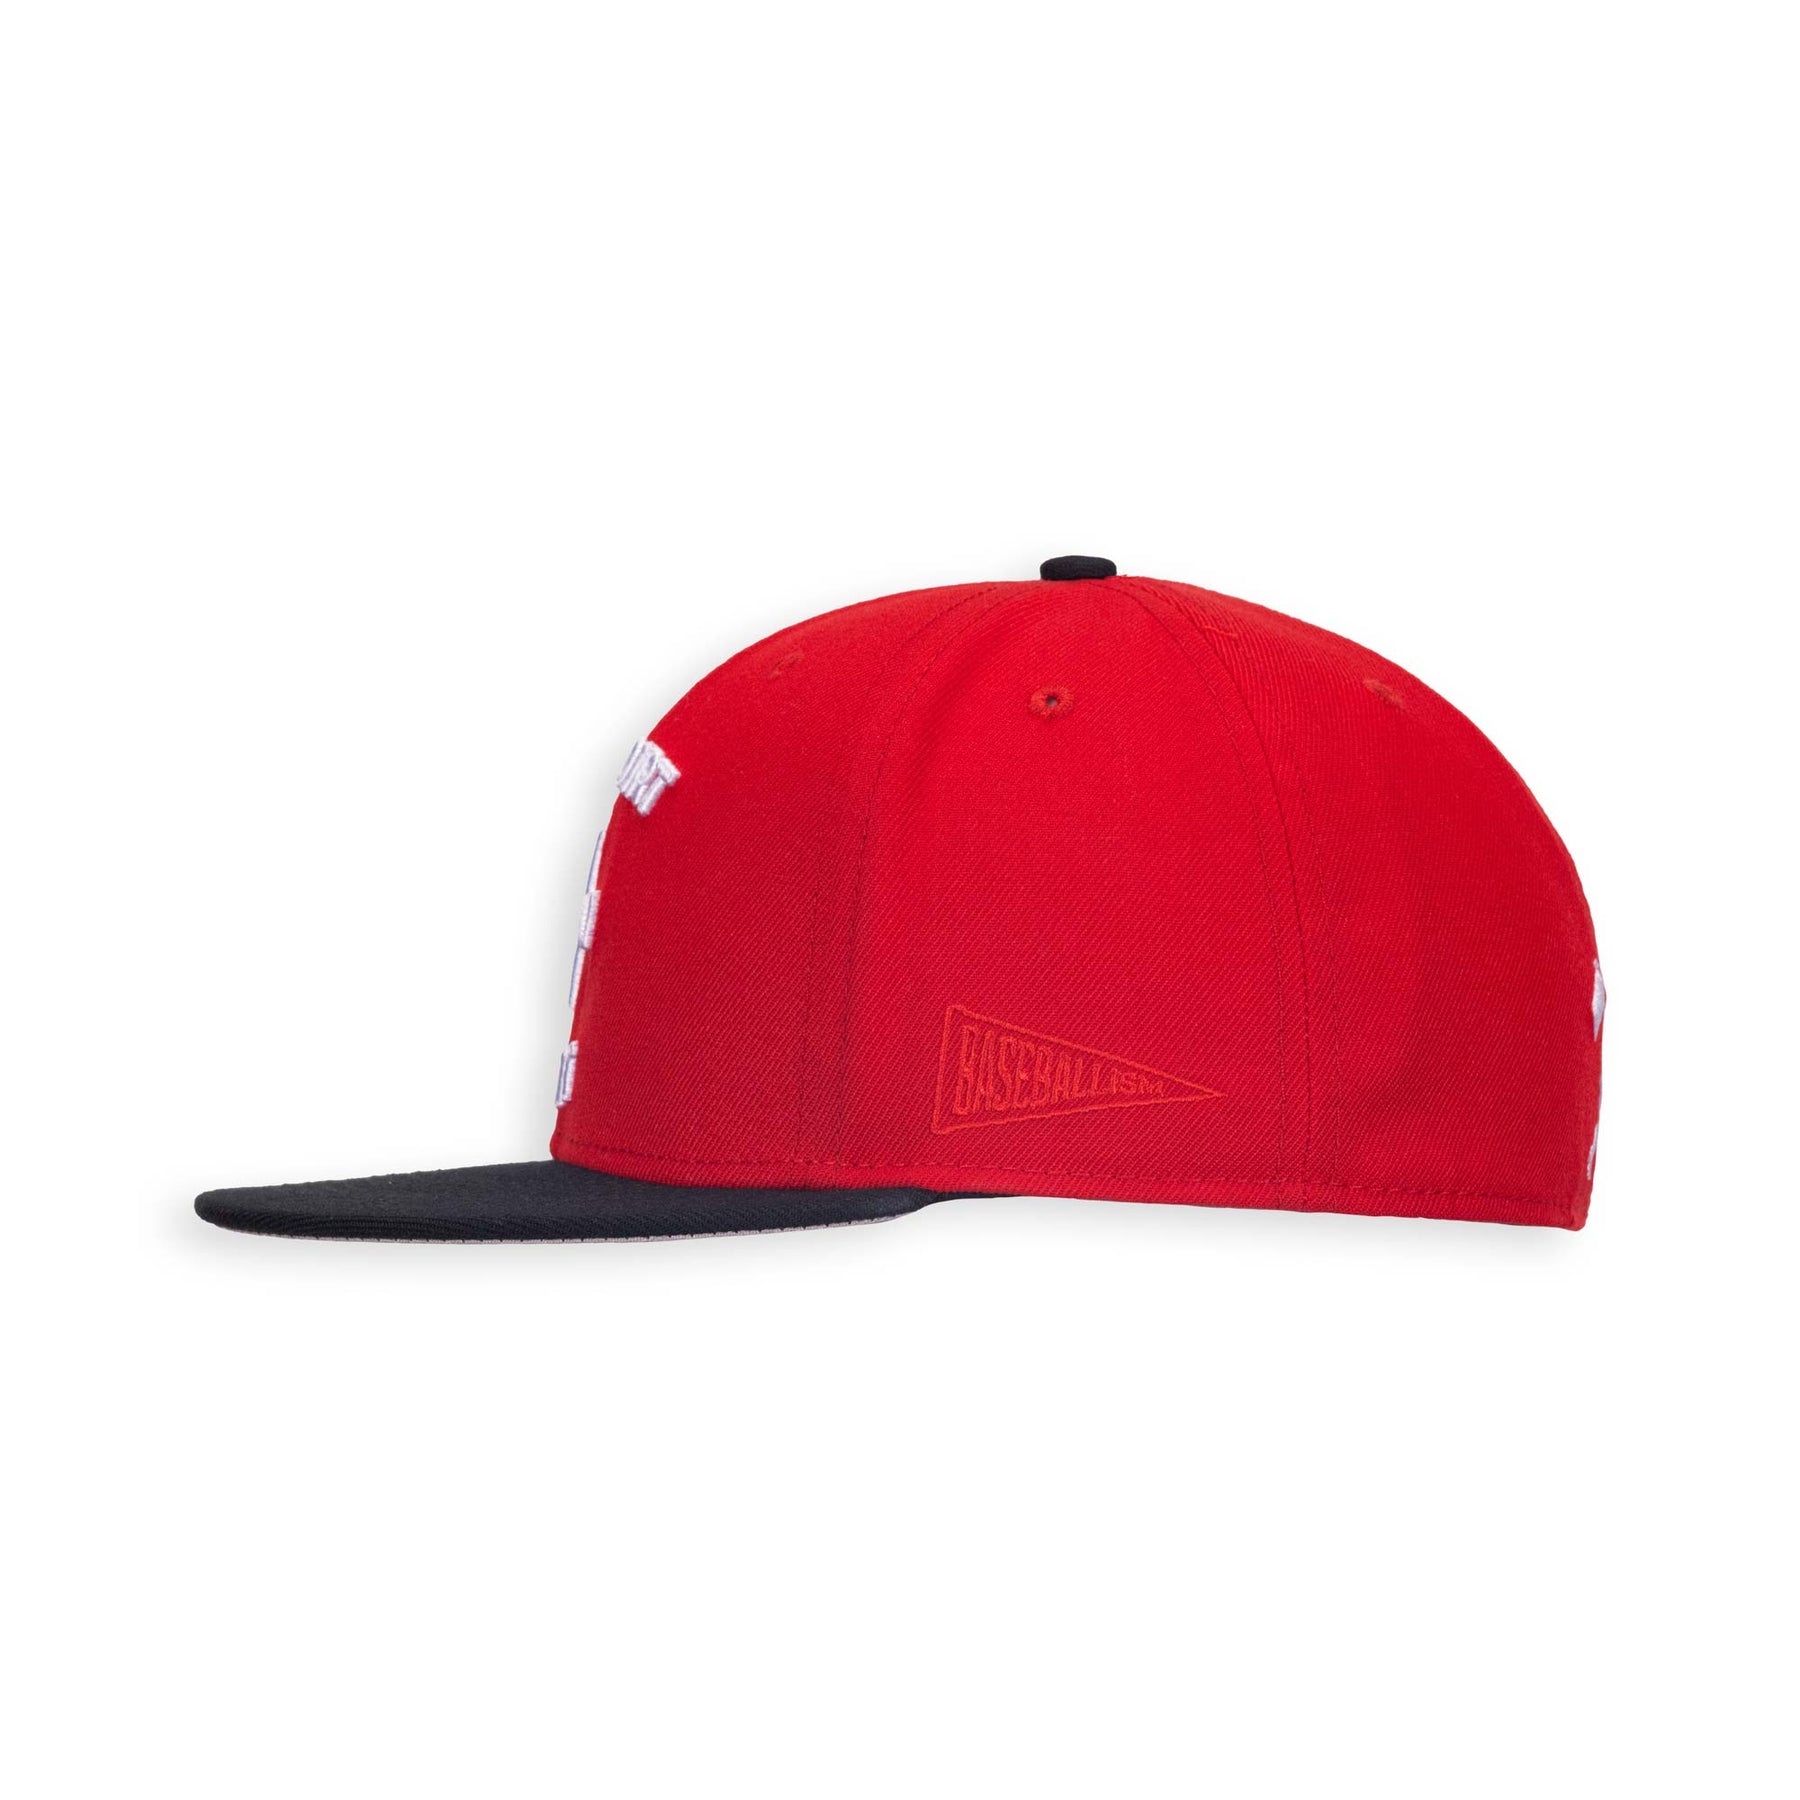 Major League Cap | Baseballism x Major League Collection